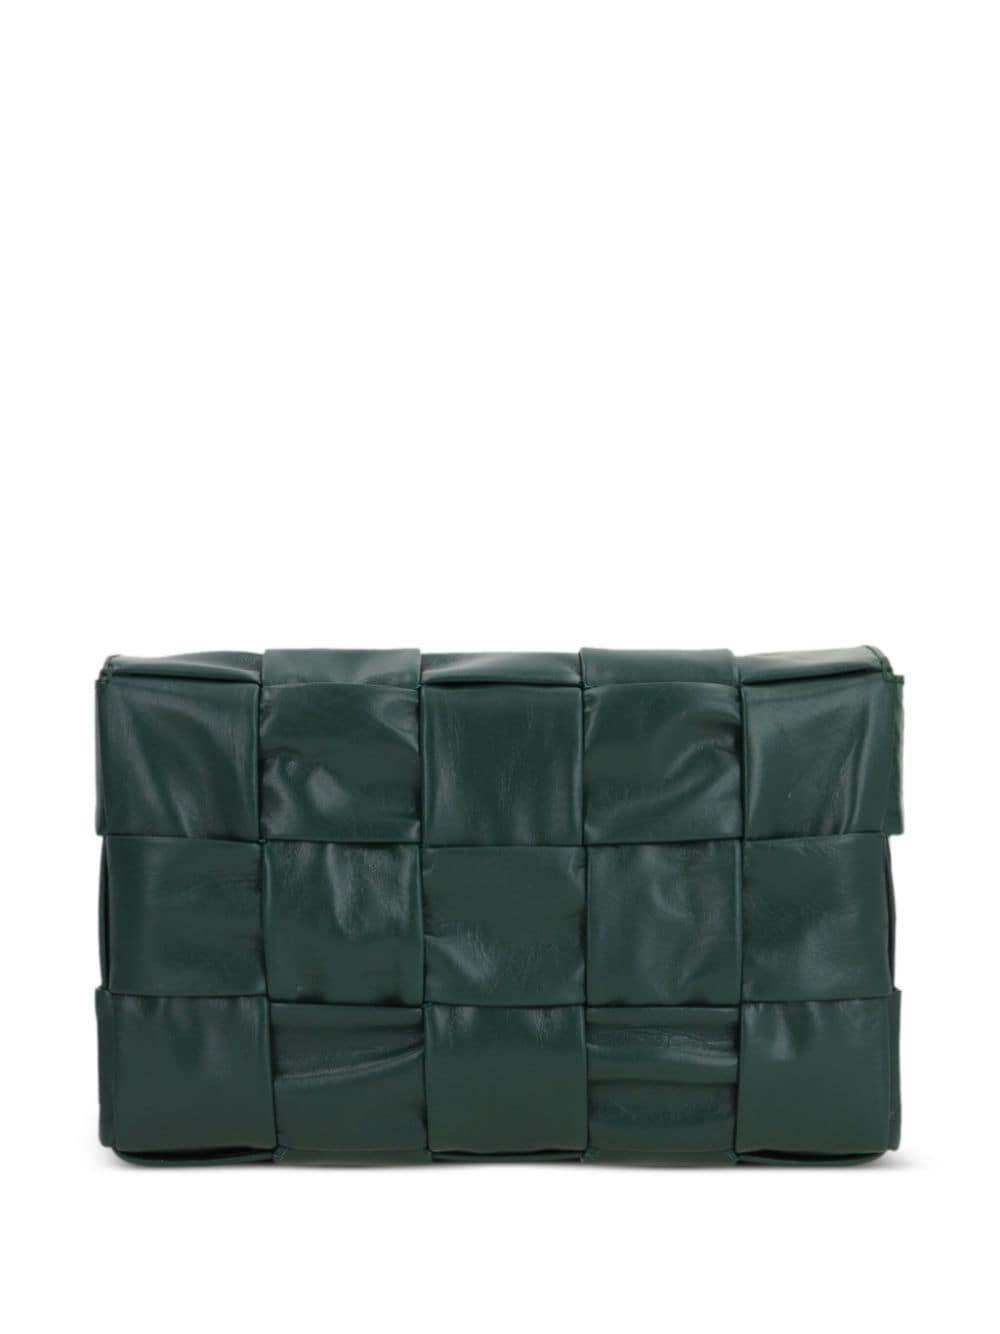 Bottega Veneta Cassette leather shoulder bag - Groen